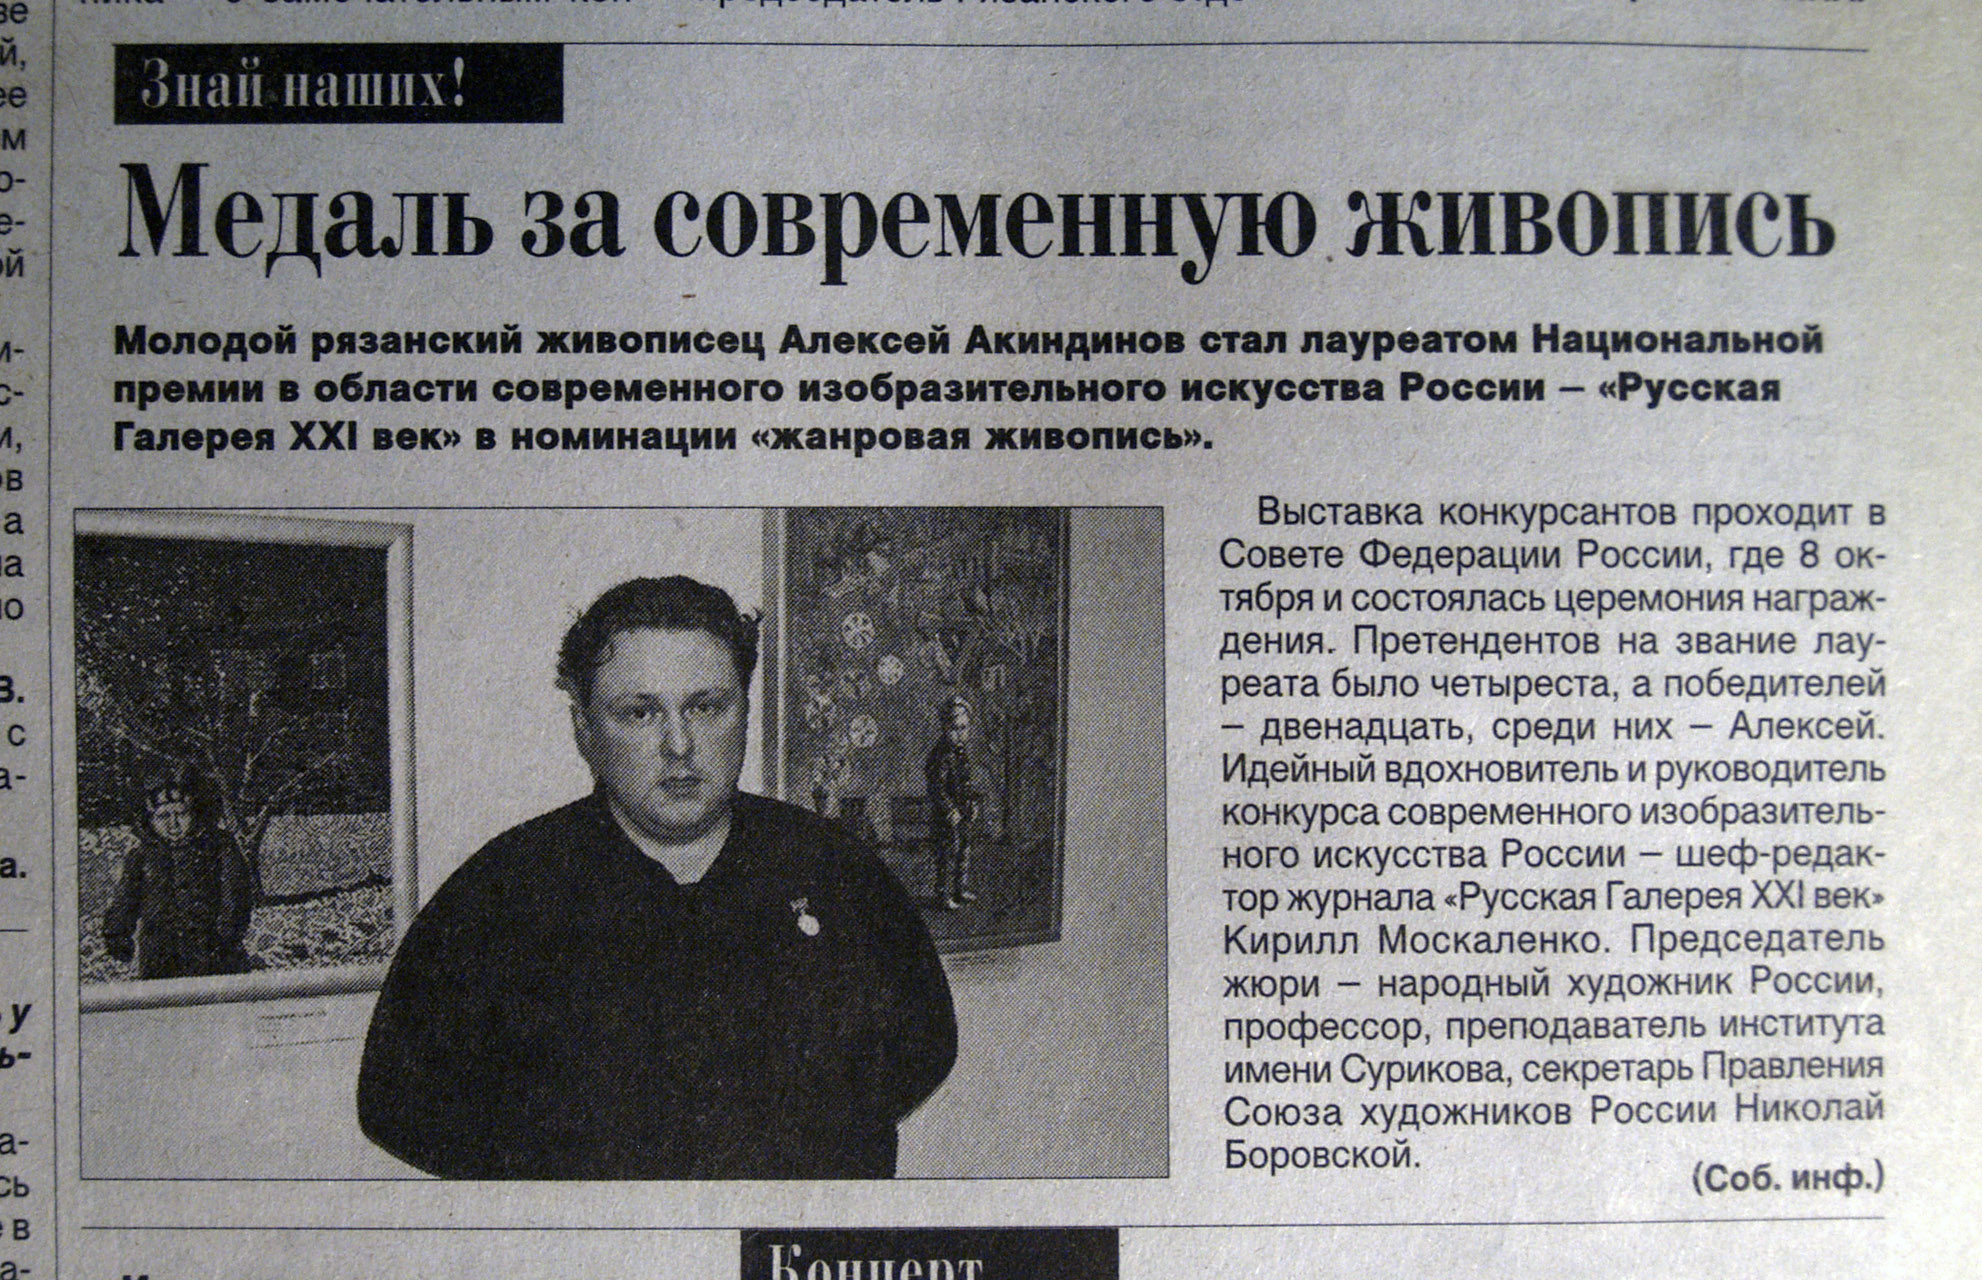 ryazanskiye vedomosti 2008 medal za sovremennuyu zivopis 2